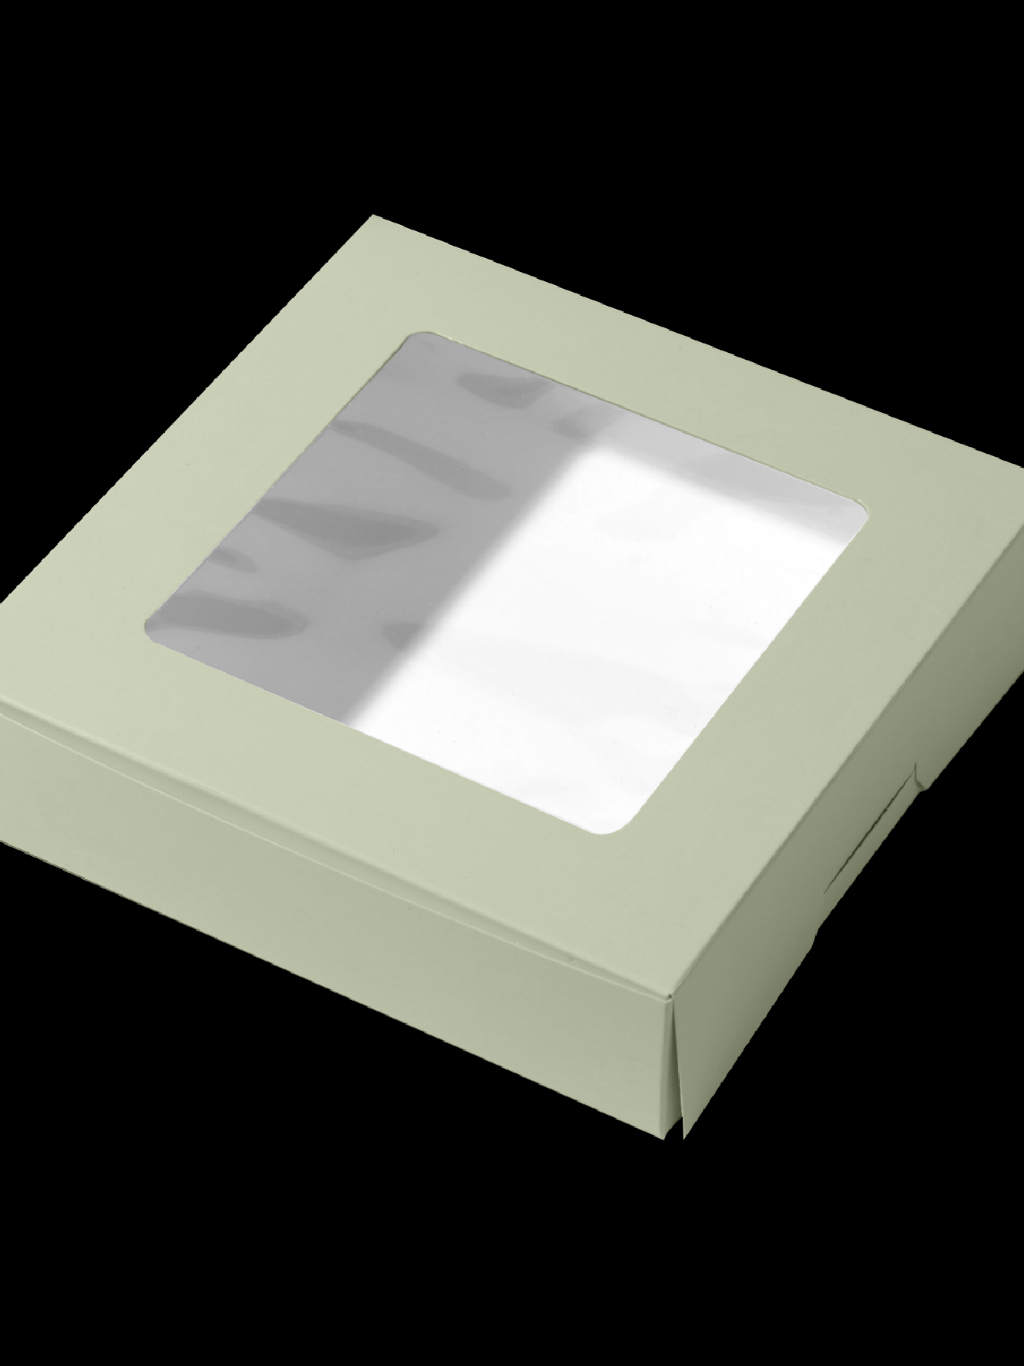 กล่อง2-ปอนด์-สูง6-5ซม-แพ็ค-20-ใบ-กล่องใส่ขนมกล่องขนม-กล่องบราวนี่-ผลิตจากกระดาษคุณภาพ-สีพาสเทล-boxlicious-th